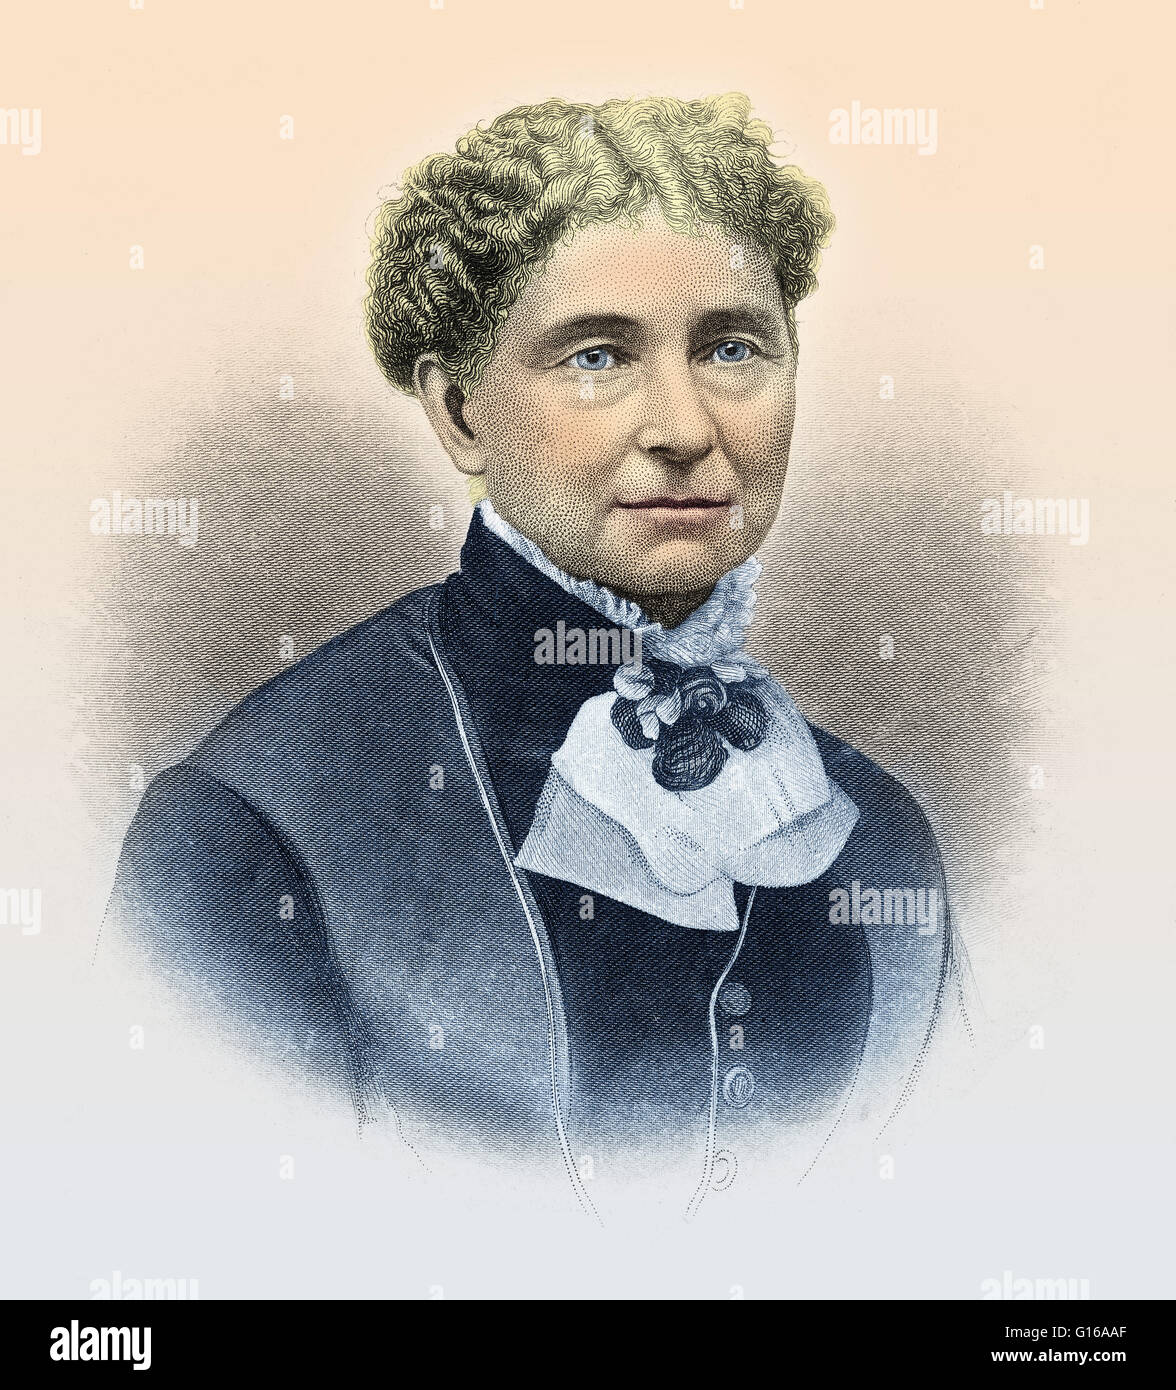 Amelia Jenks Bloomer (27. Mai 1818 - 30. Dezember 1894) war ein amerikanischer Frauen Rechteund Mäßigkeit Fürsprecher. Obwohl sie nicht die Frauen Reform Kleidungsstil bekannt als Pumphose erstellt haben, ihr Name wurde früh wegen ihr zugeordnet und Stockfoto